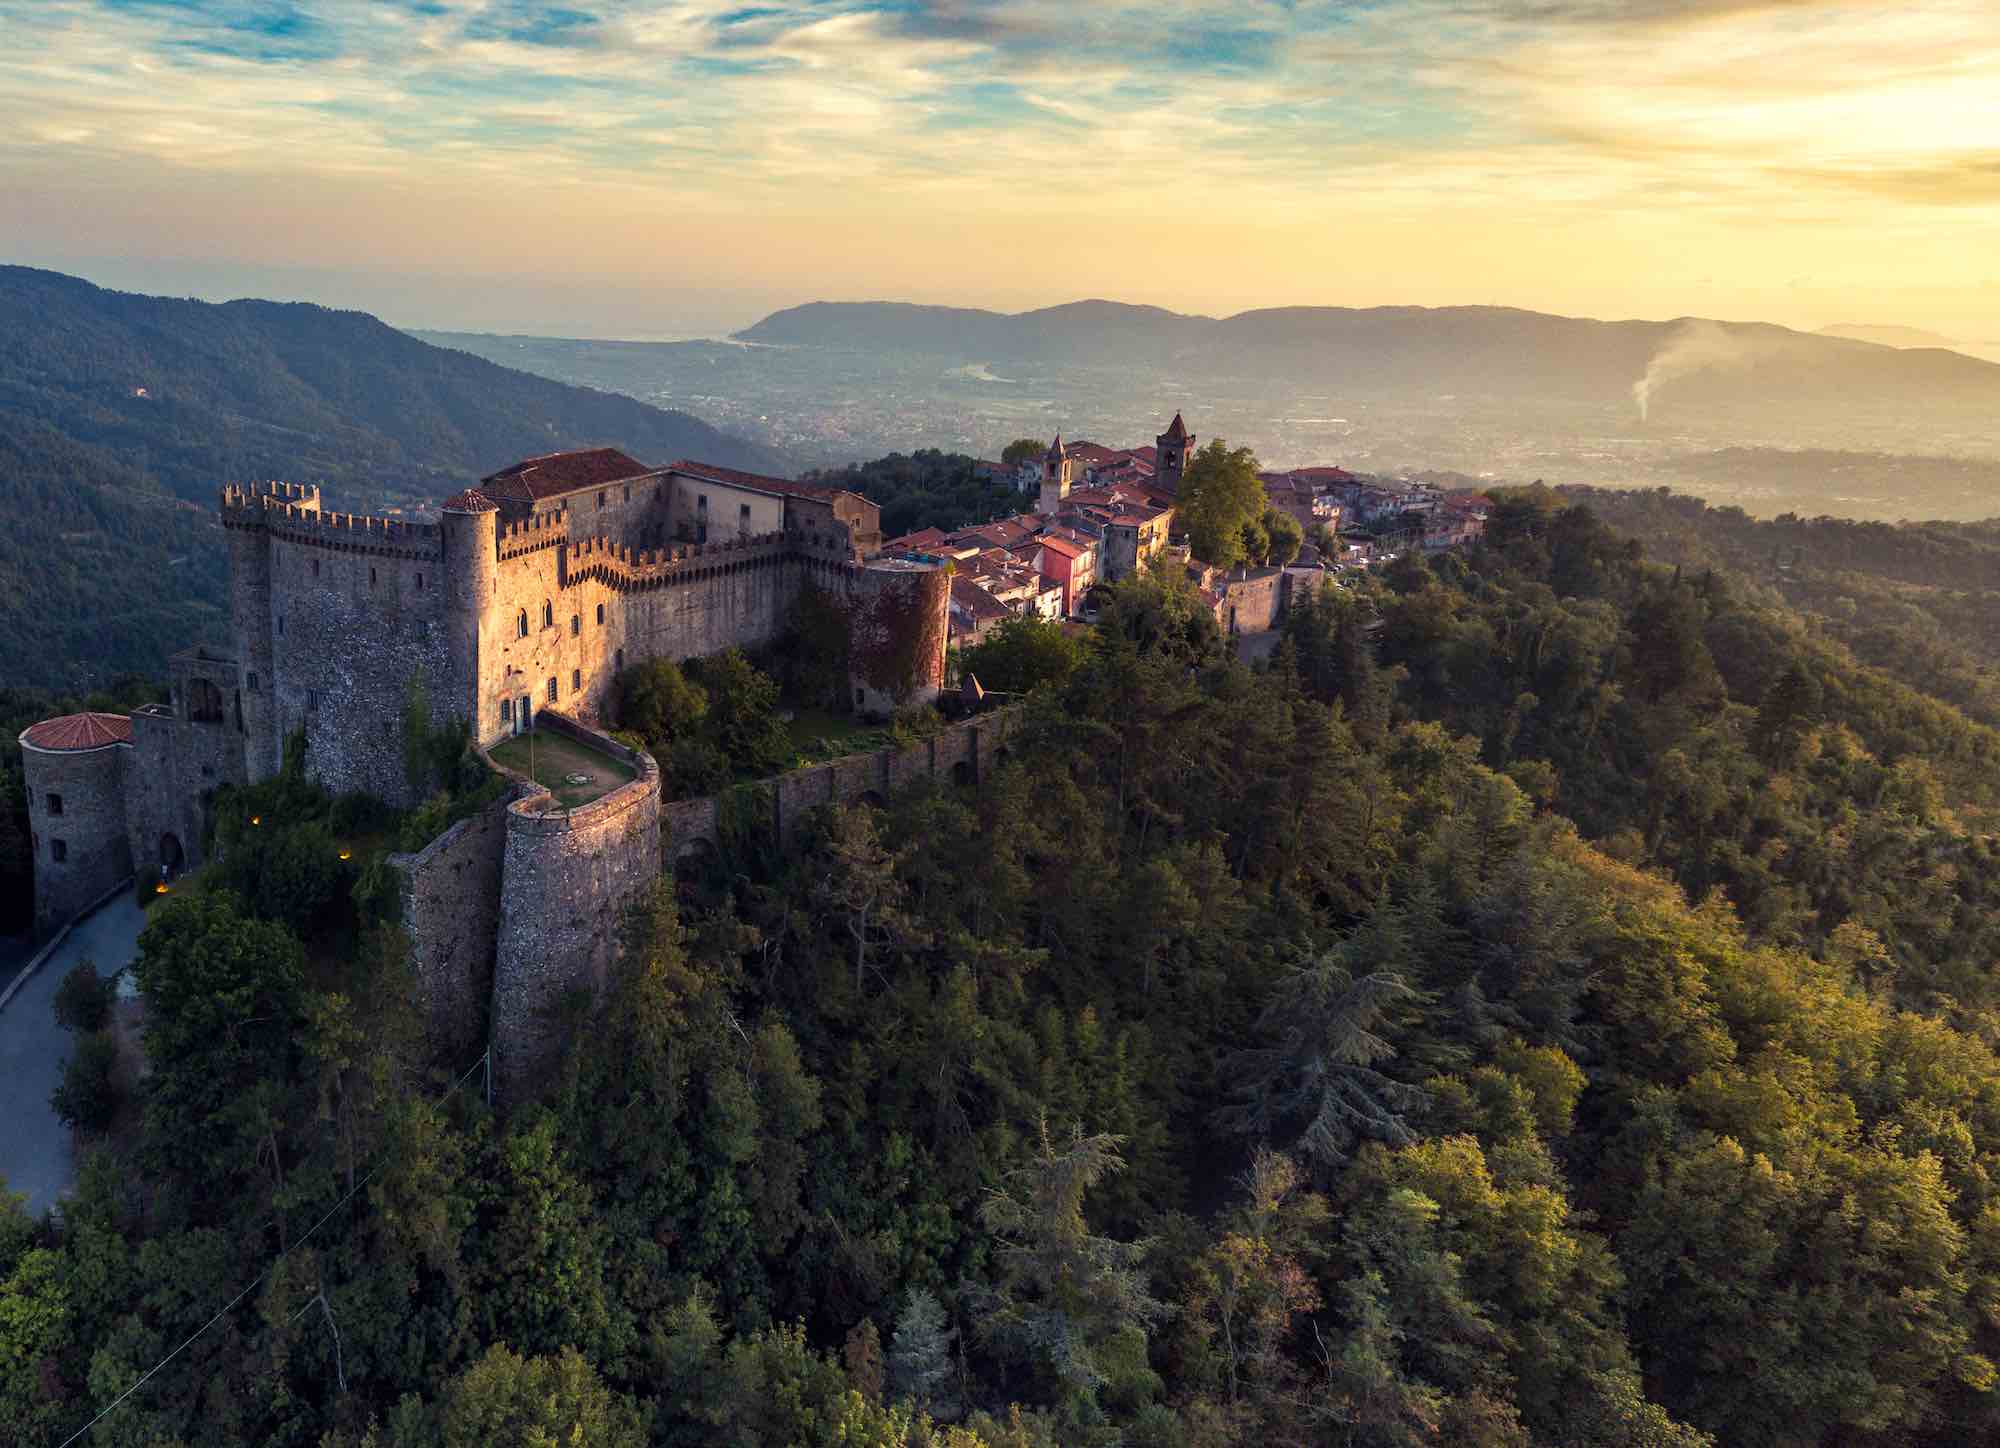 Il Castello Malaspina a Fosdinovo, uno dei più bei castelli in Toscana